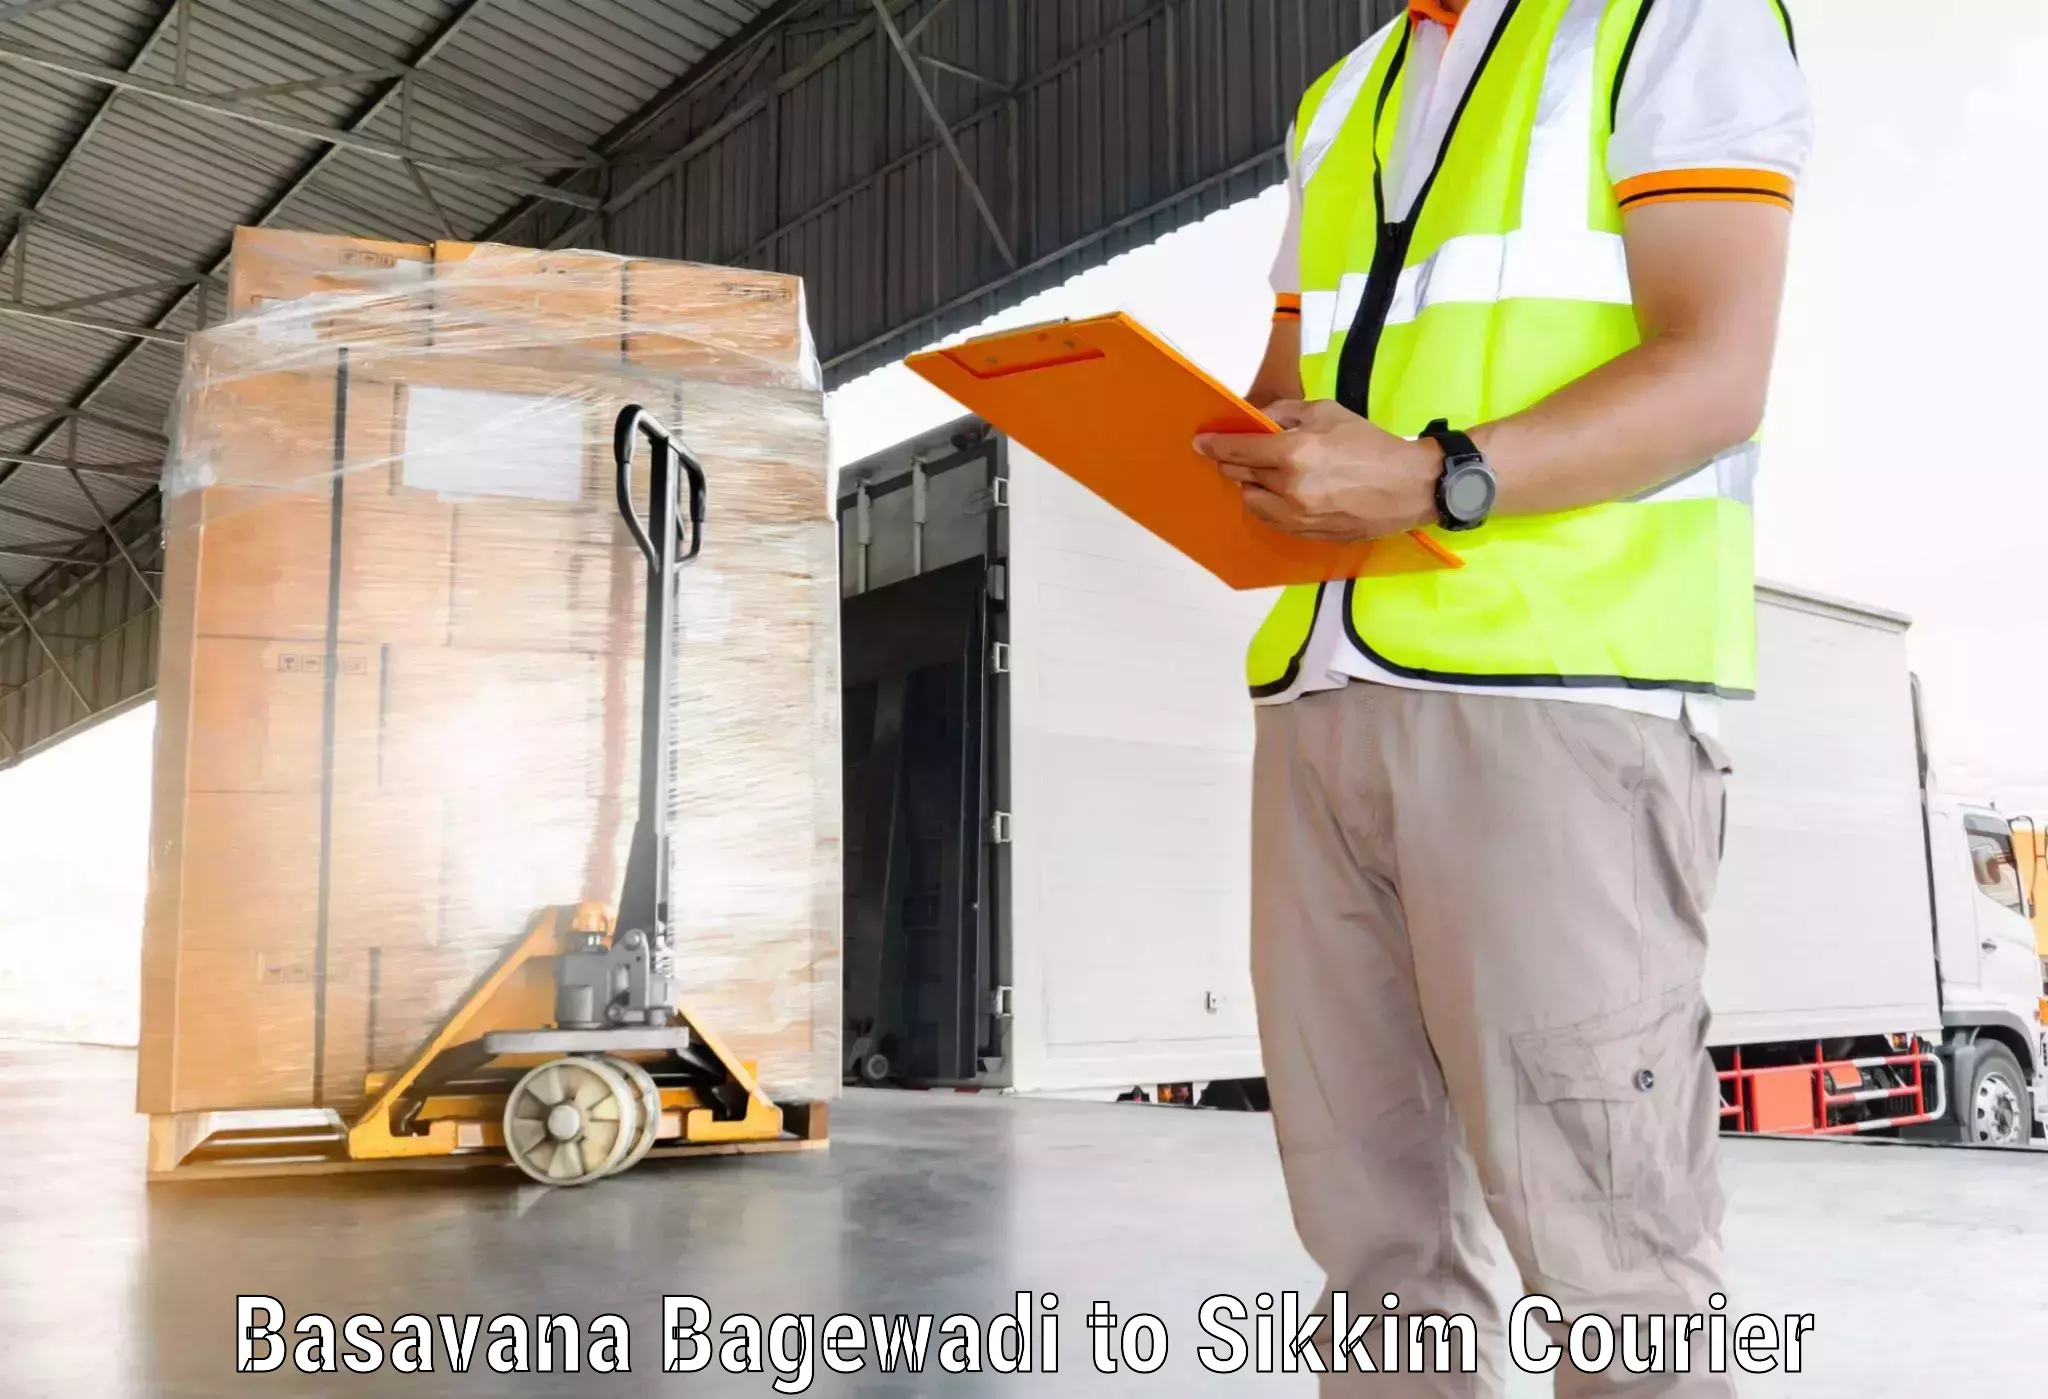 Modern delivery methods Basavana Bagewadi to NIT Sikkim